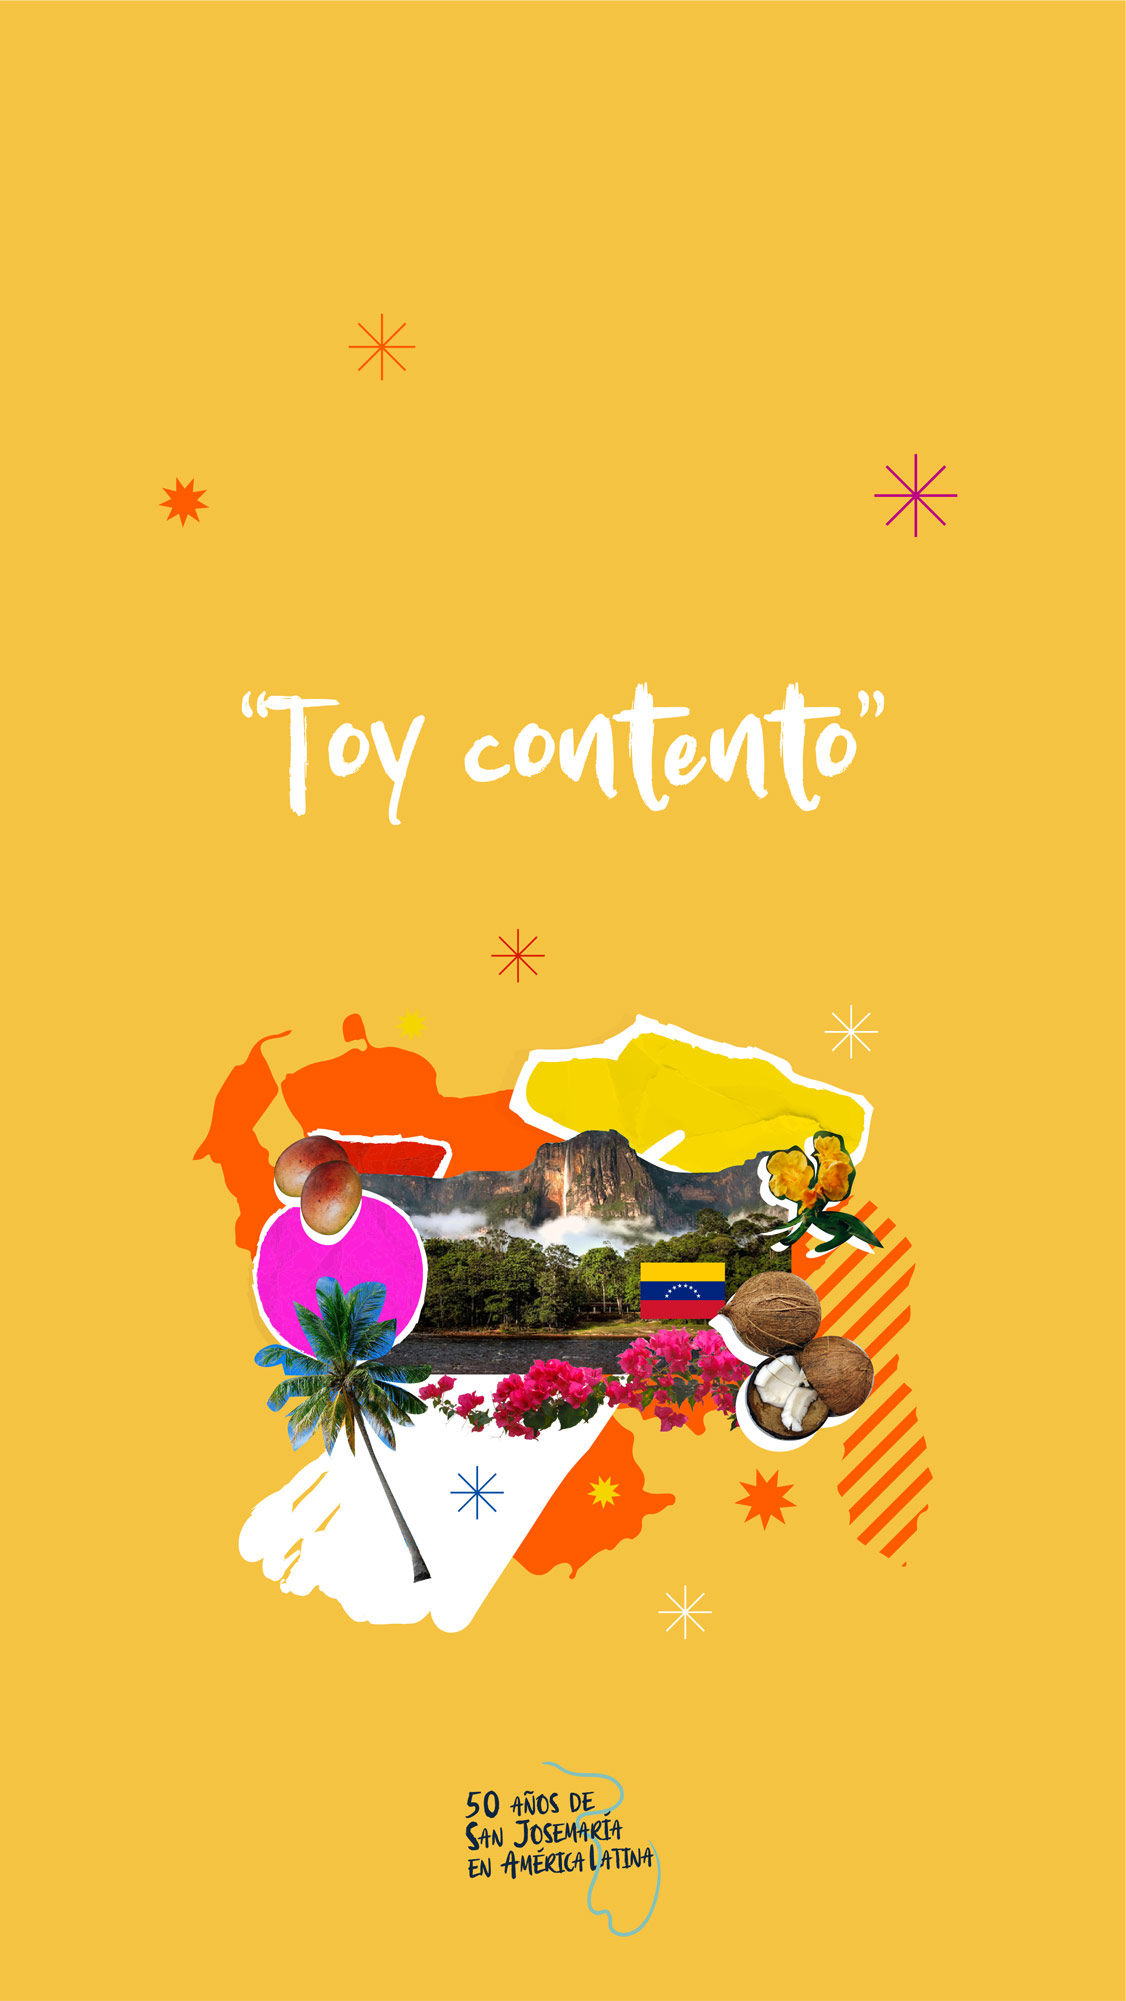 Toy contento - 50 San Josemaría en América Latina